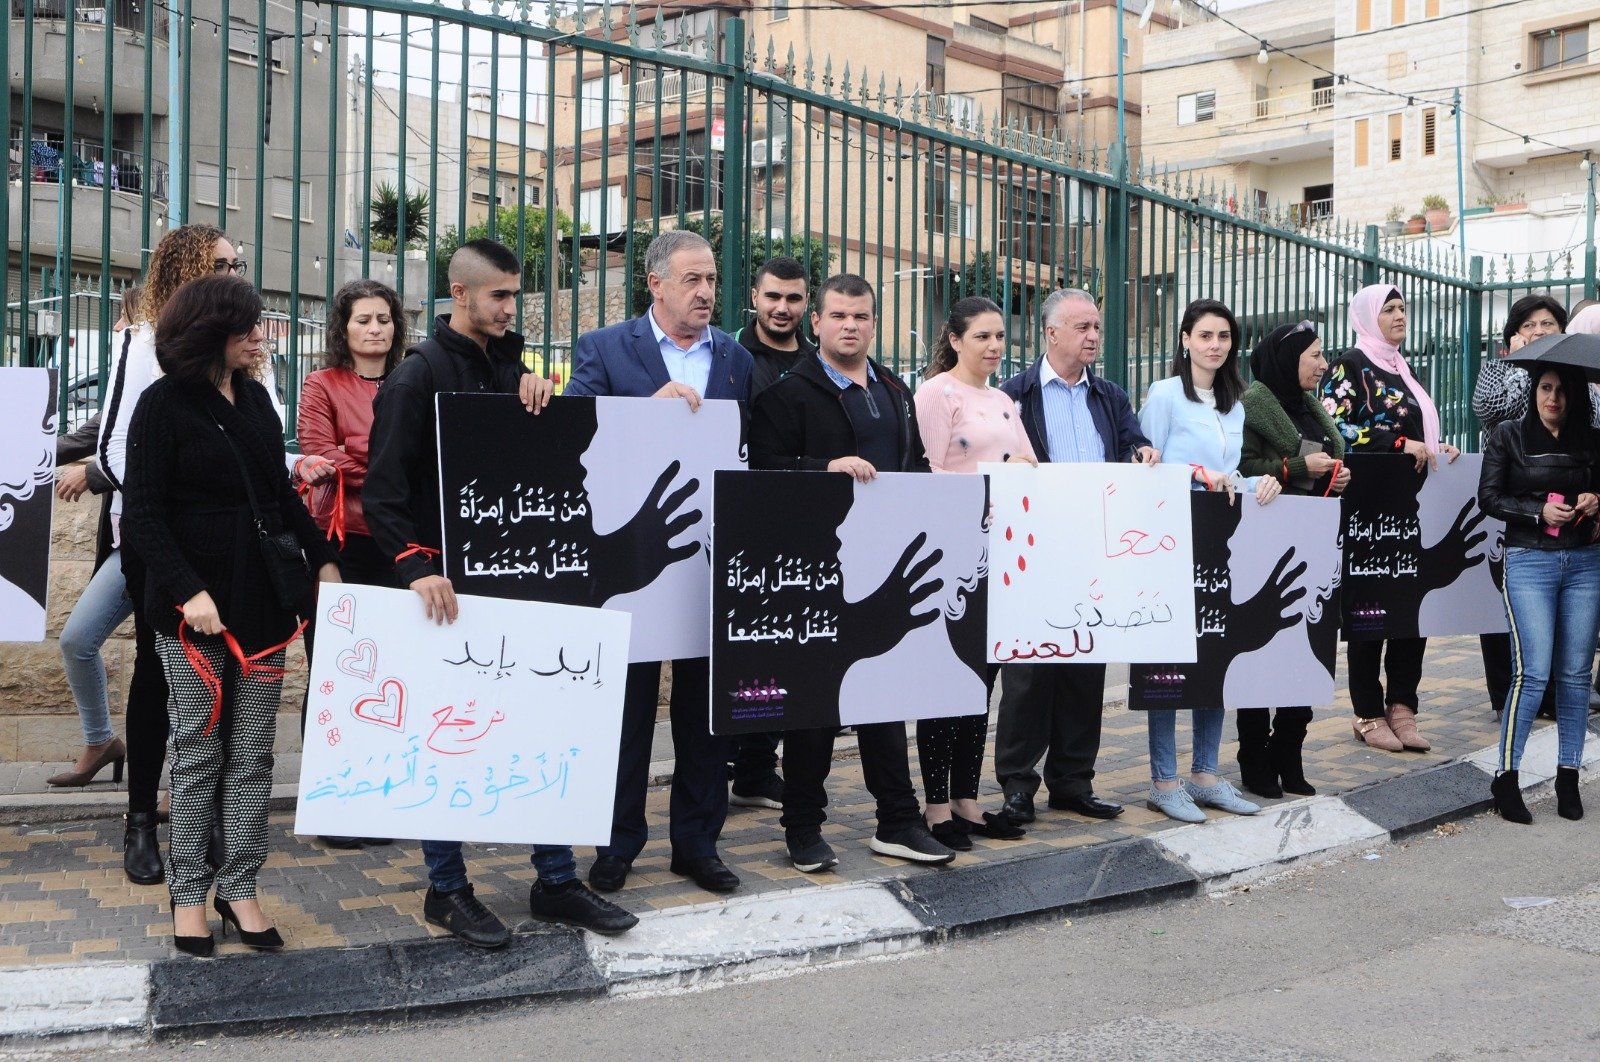 وقفة احتجاجية على قتل النساء ينظمها مجلس طرعان المحلي بالتعاون مع مجلس نعمات -3